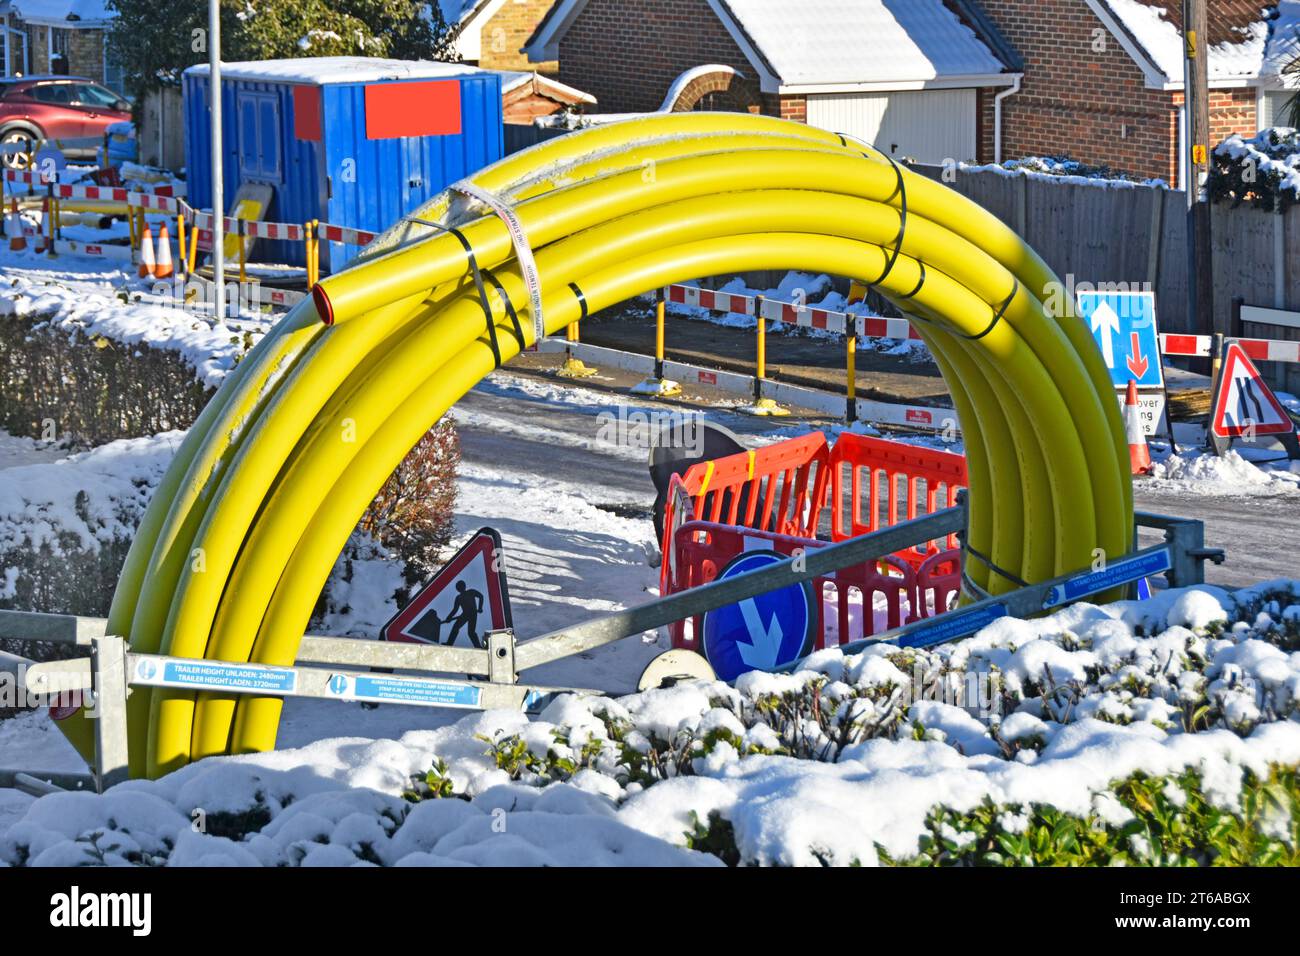 La neve invernale e le strade ghiacciate chiudono i lavori stradali in un villaggio residenziale, il grande tubo principale a spirale del gas giallo, in sostituzione della ghisa Essex England UK, che invecchia Foto Stock